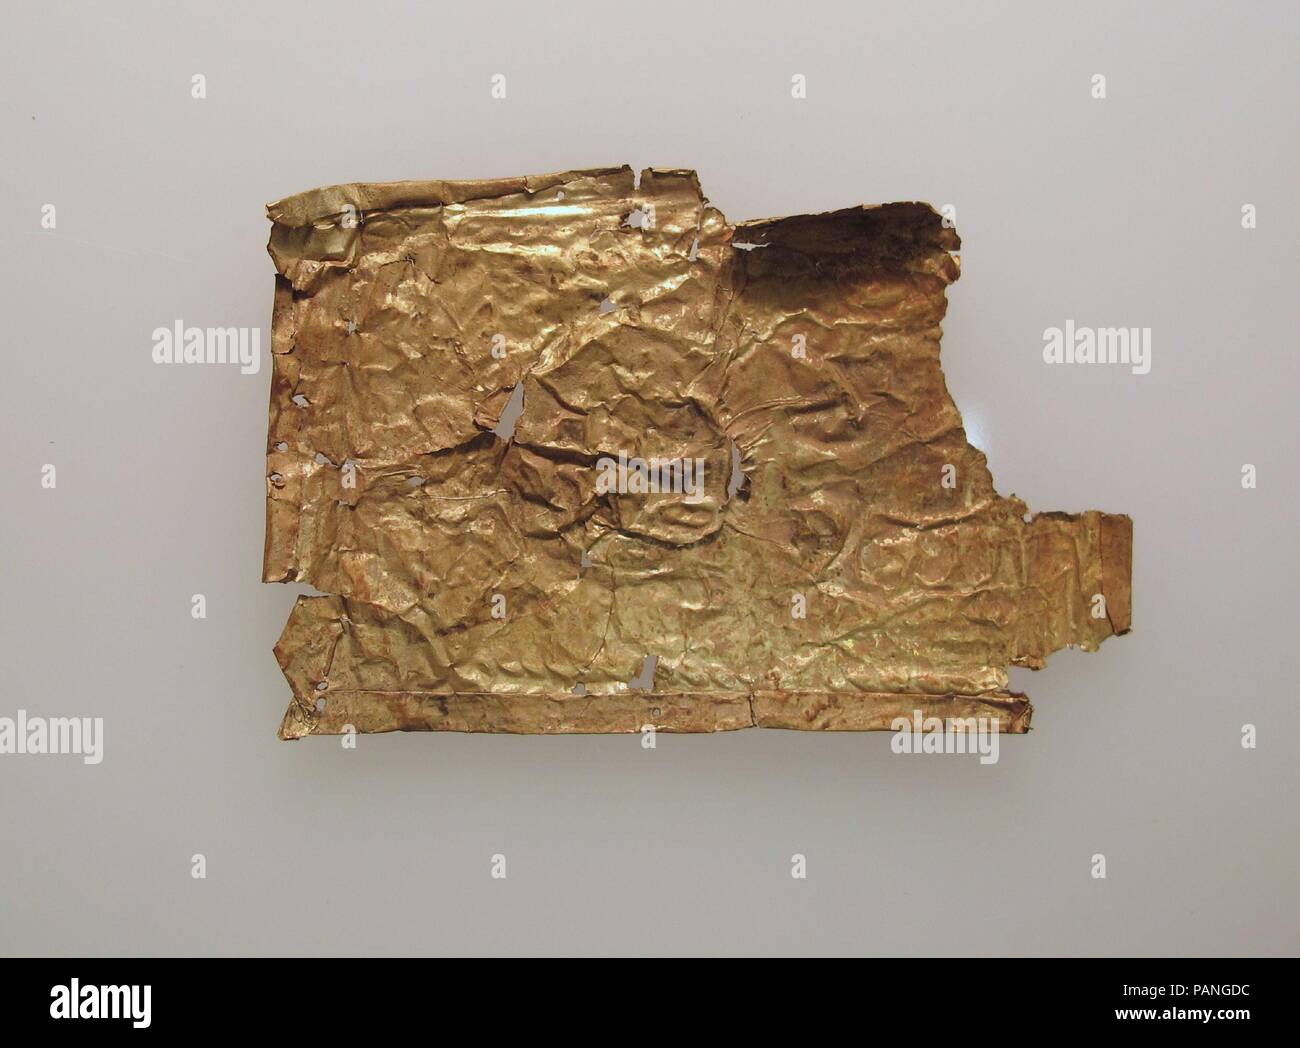 Placas, láminas de oro fino. Cultura: chipriota. Dimensiones: Otros: 1 3/4" x 2 5/8" x 1/16". (4,4 x 6,7 x 0,2 cm). Museo: Museo Metropolitano de Arte, Nueva York, Estados Unidos. Foto de stock